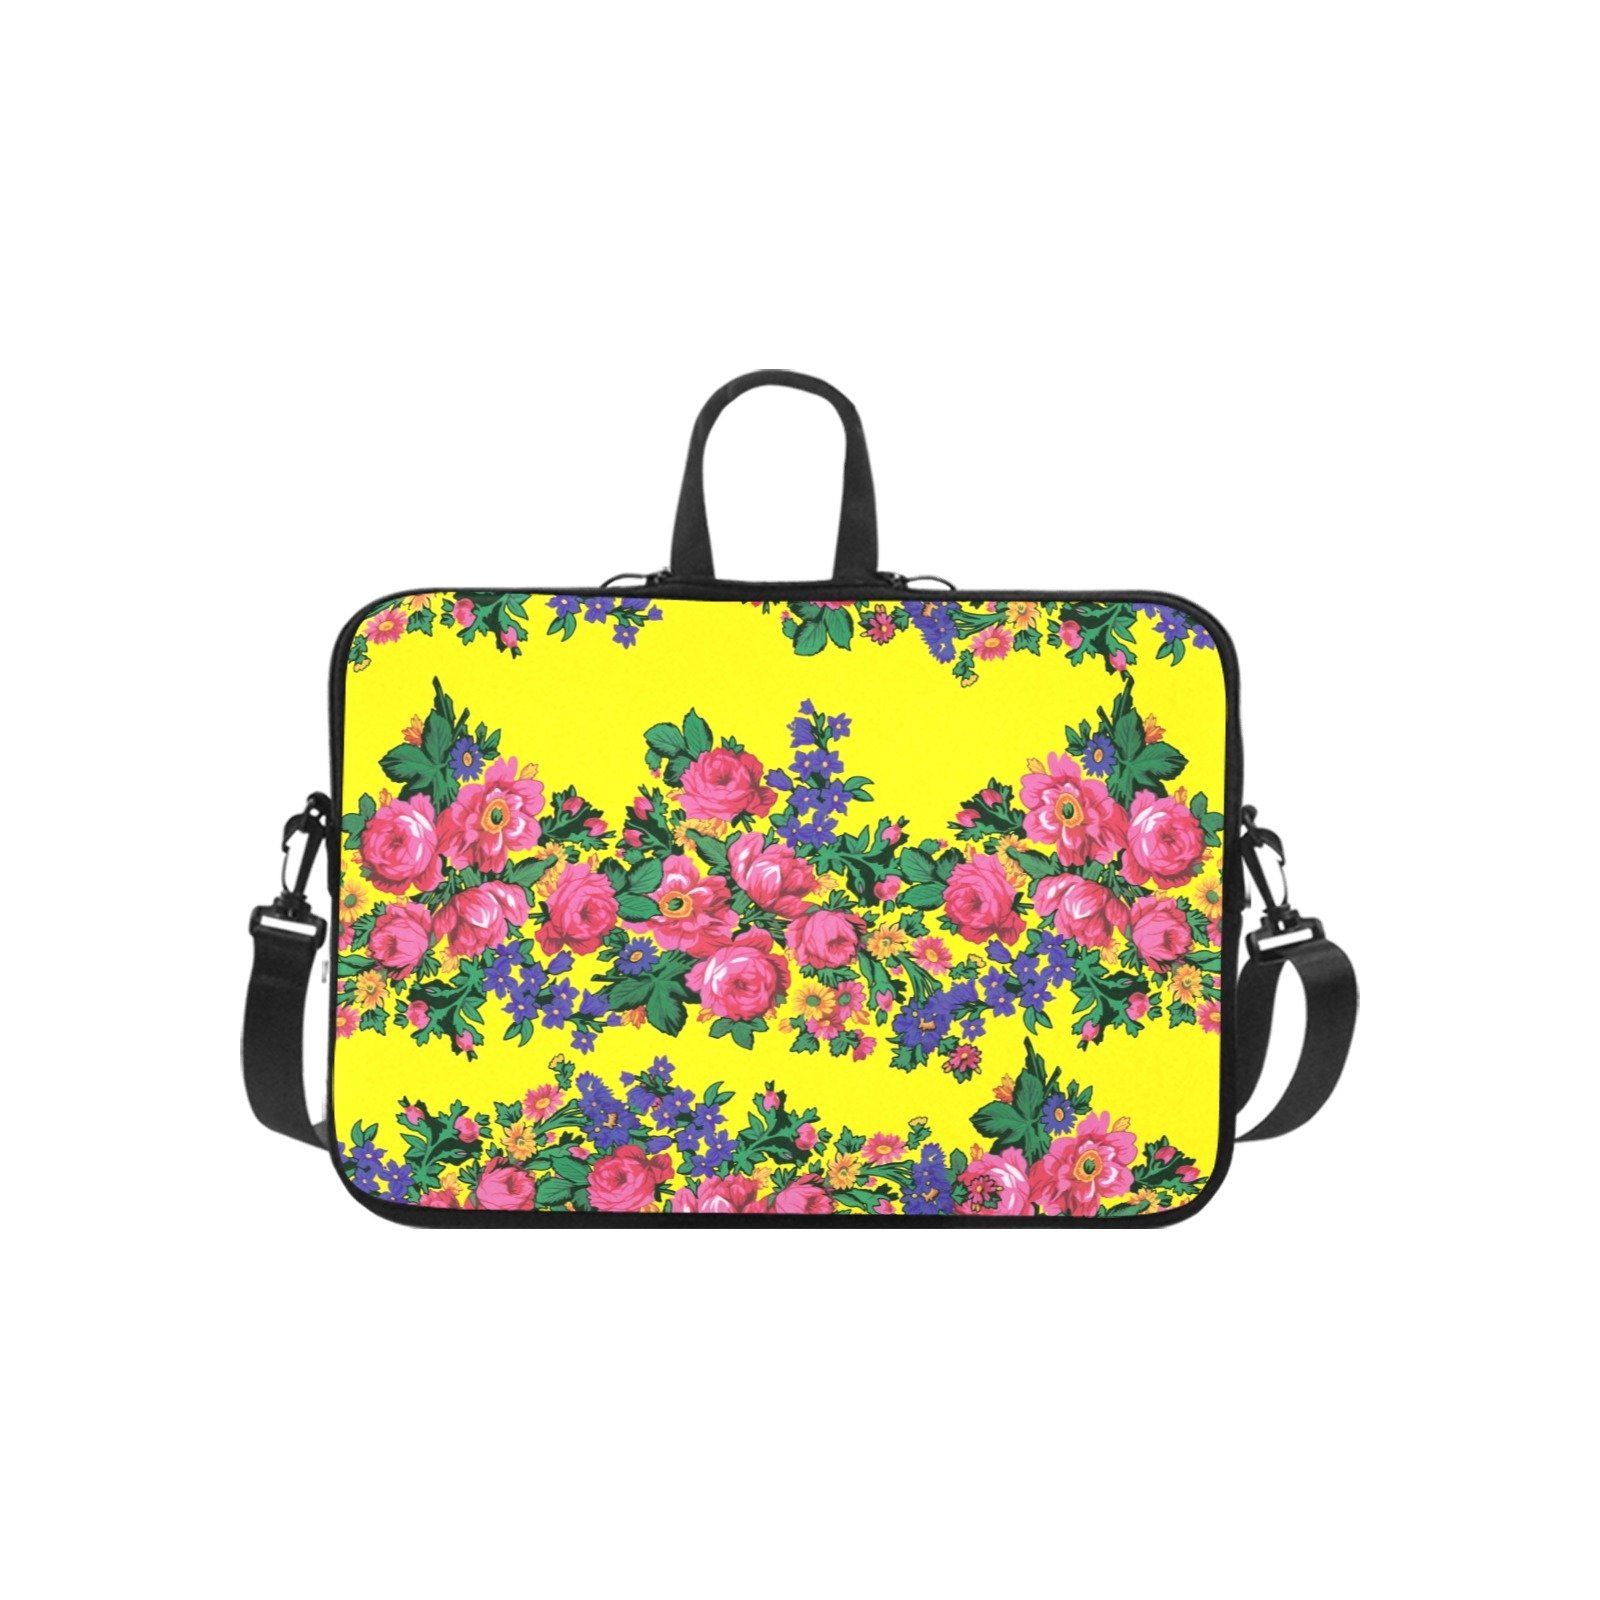 Kokum's Revenge Yellow Laptop Handbags 11" bag e-joyer 